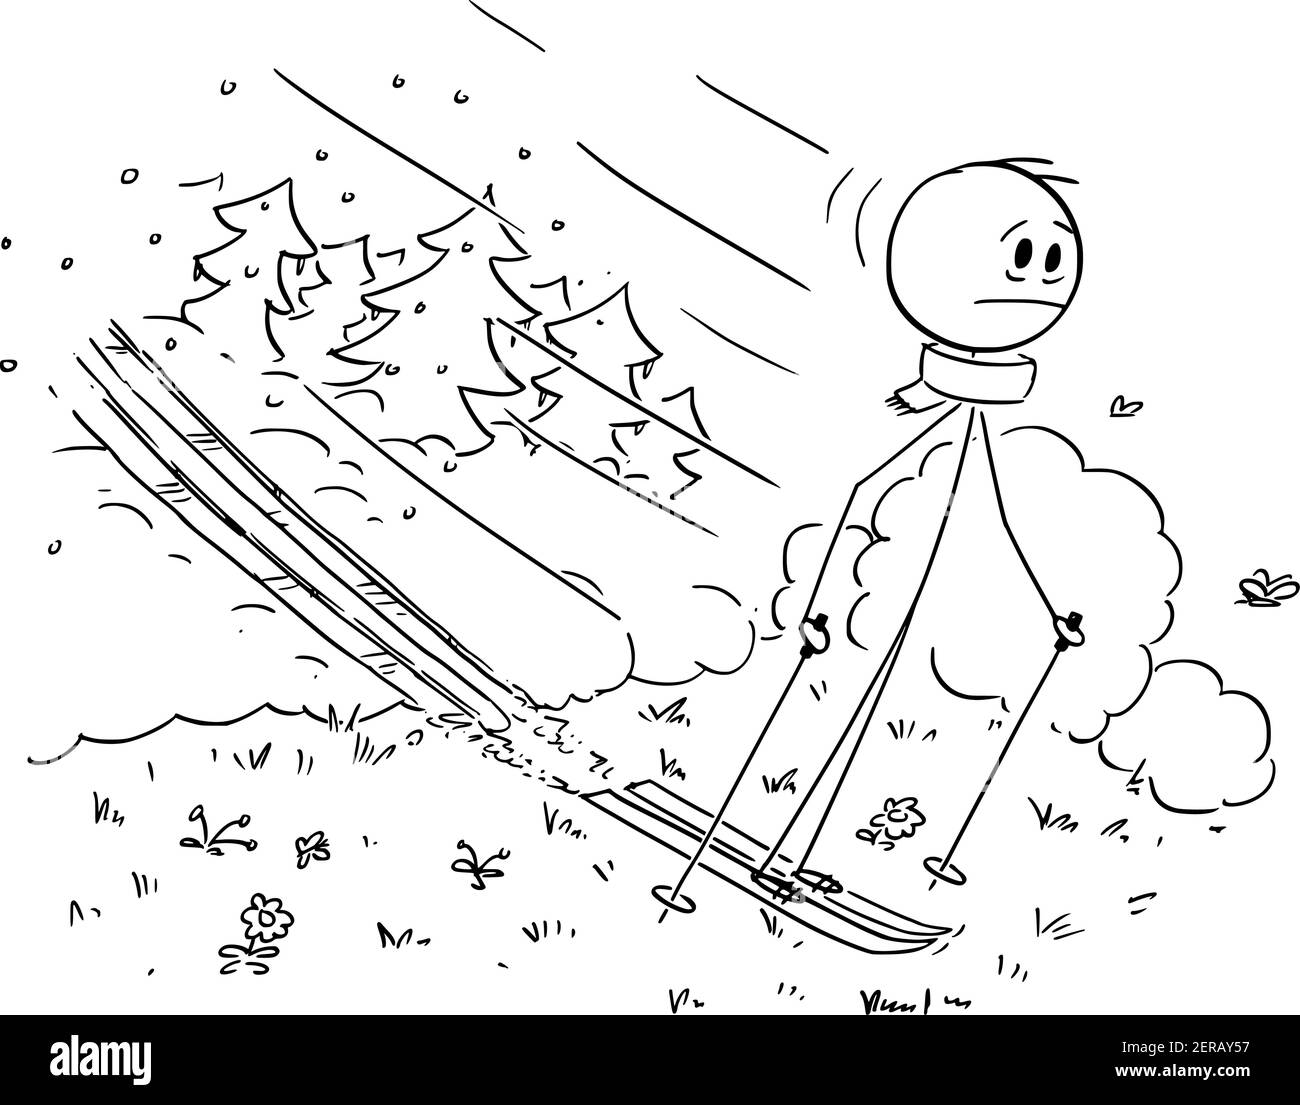 Homme skier sur la neige, tandis que l'hiver s'est terminé et que le printemps commence, homme skant sur l'herbe. Illustration de personnage ou de dessin animé vectoriel. Illustration de Vecteur